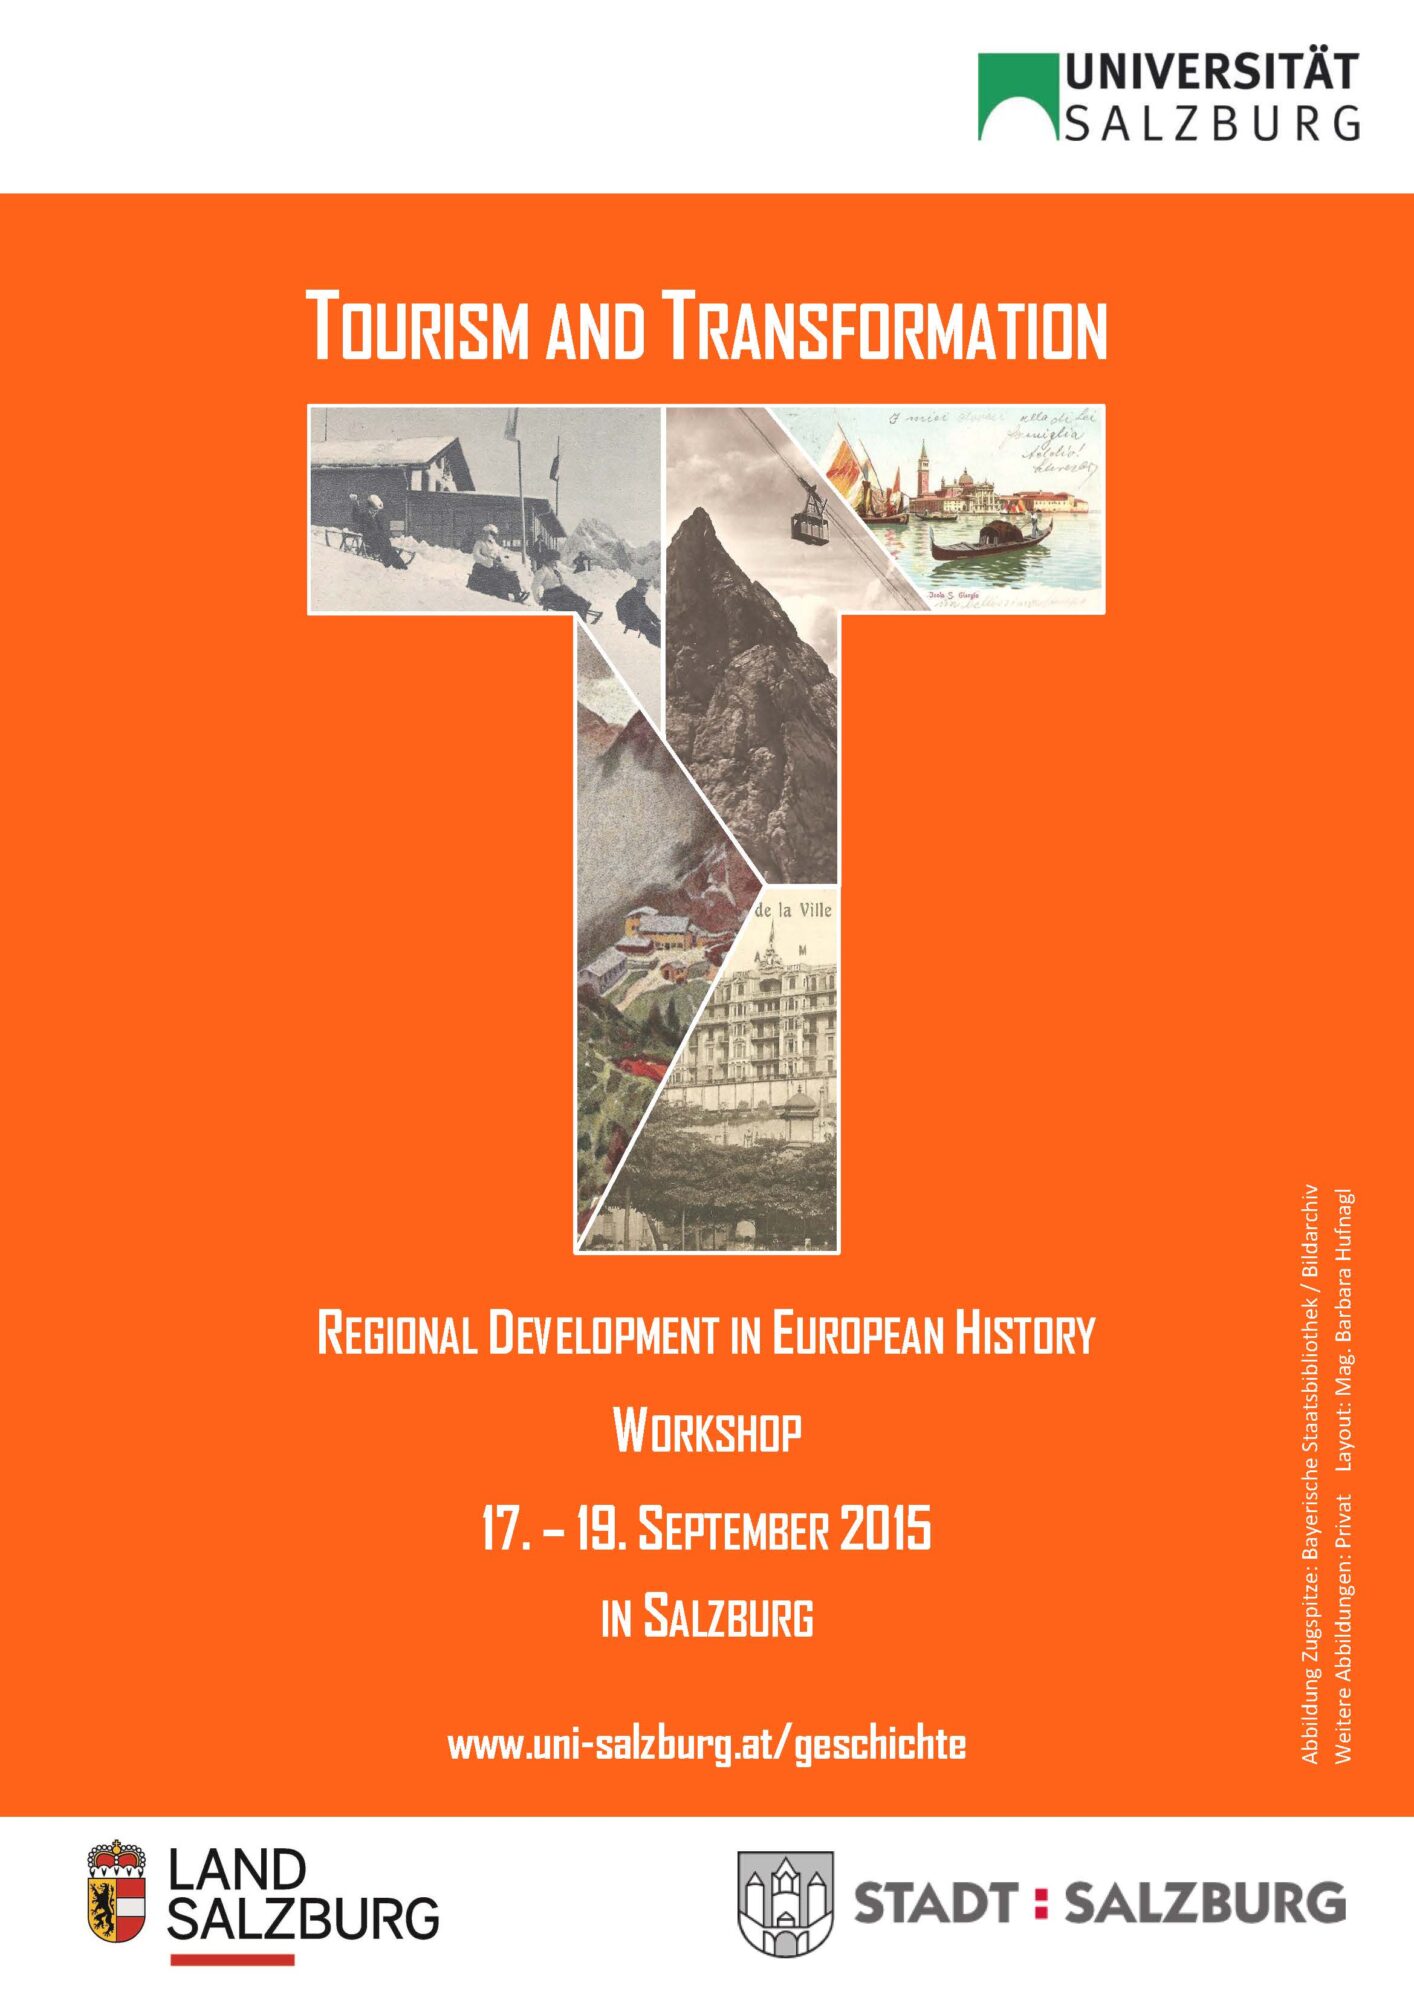 Bild zu Workshop Tourism and transformation